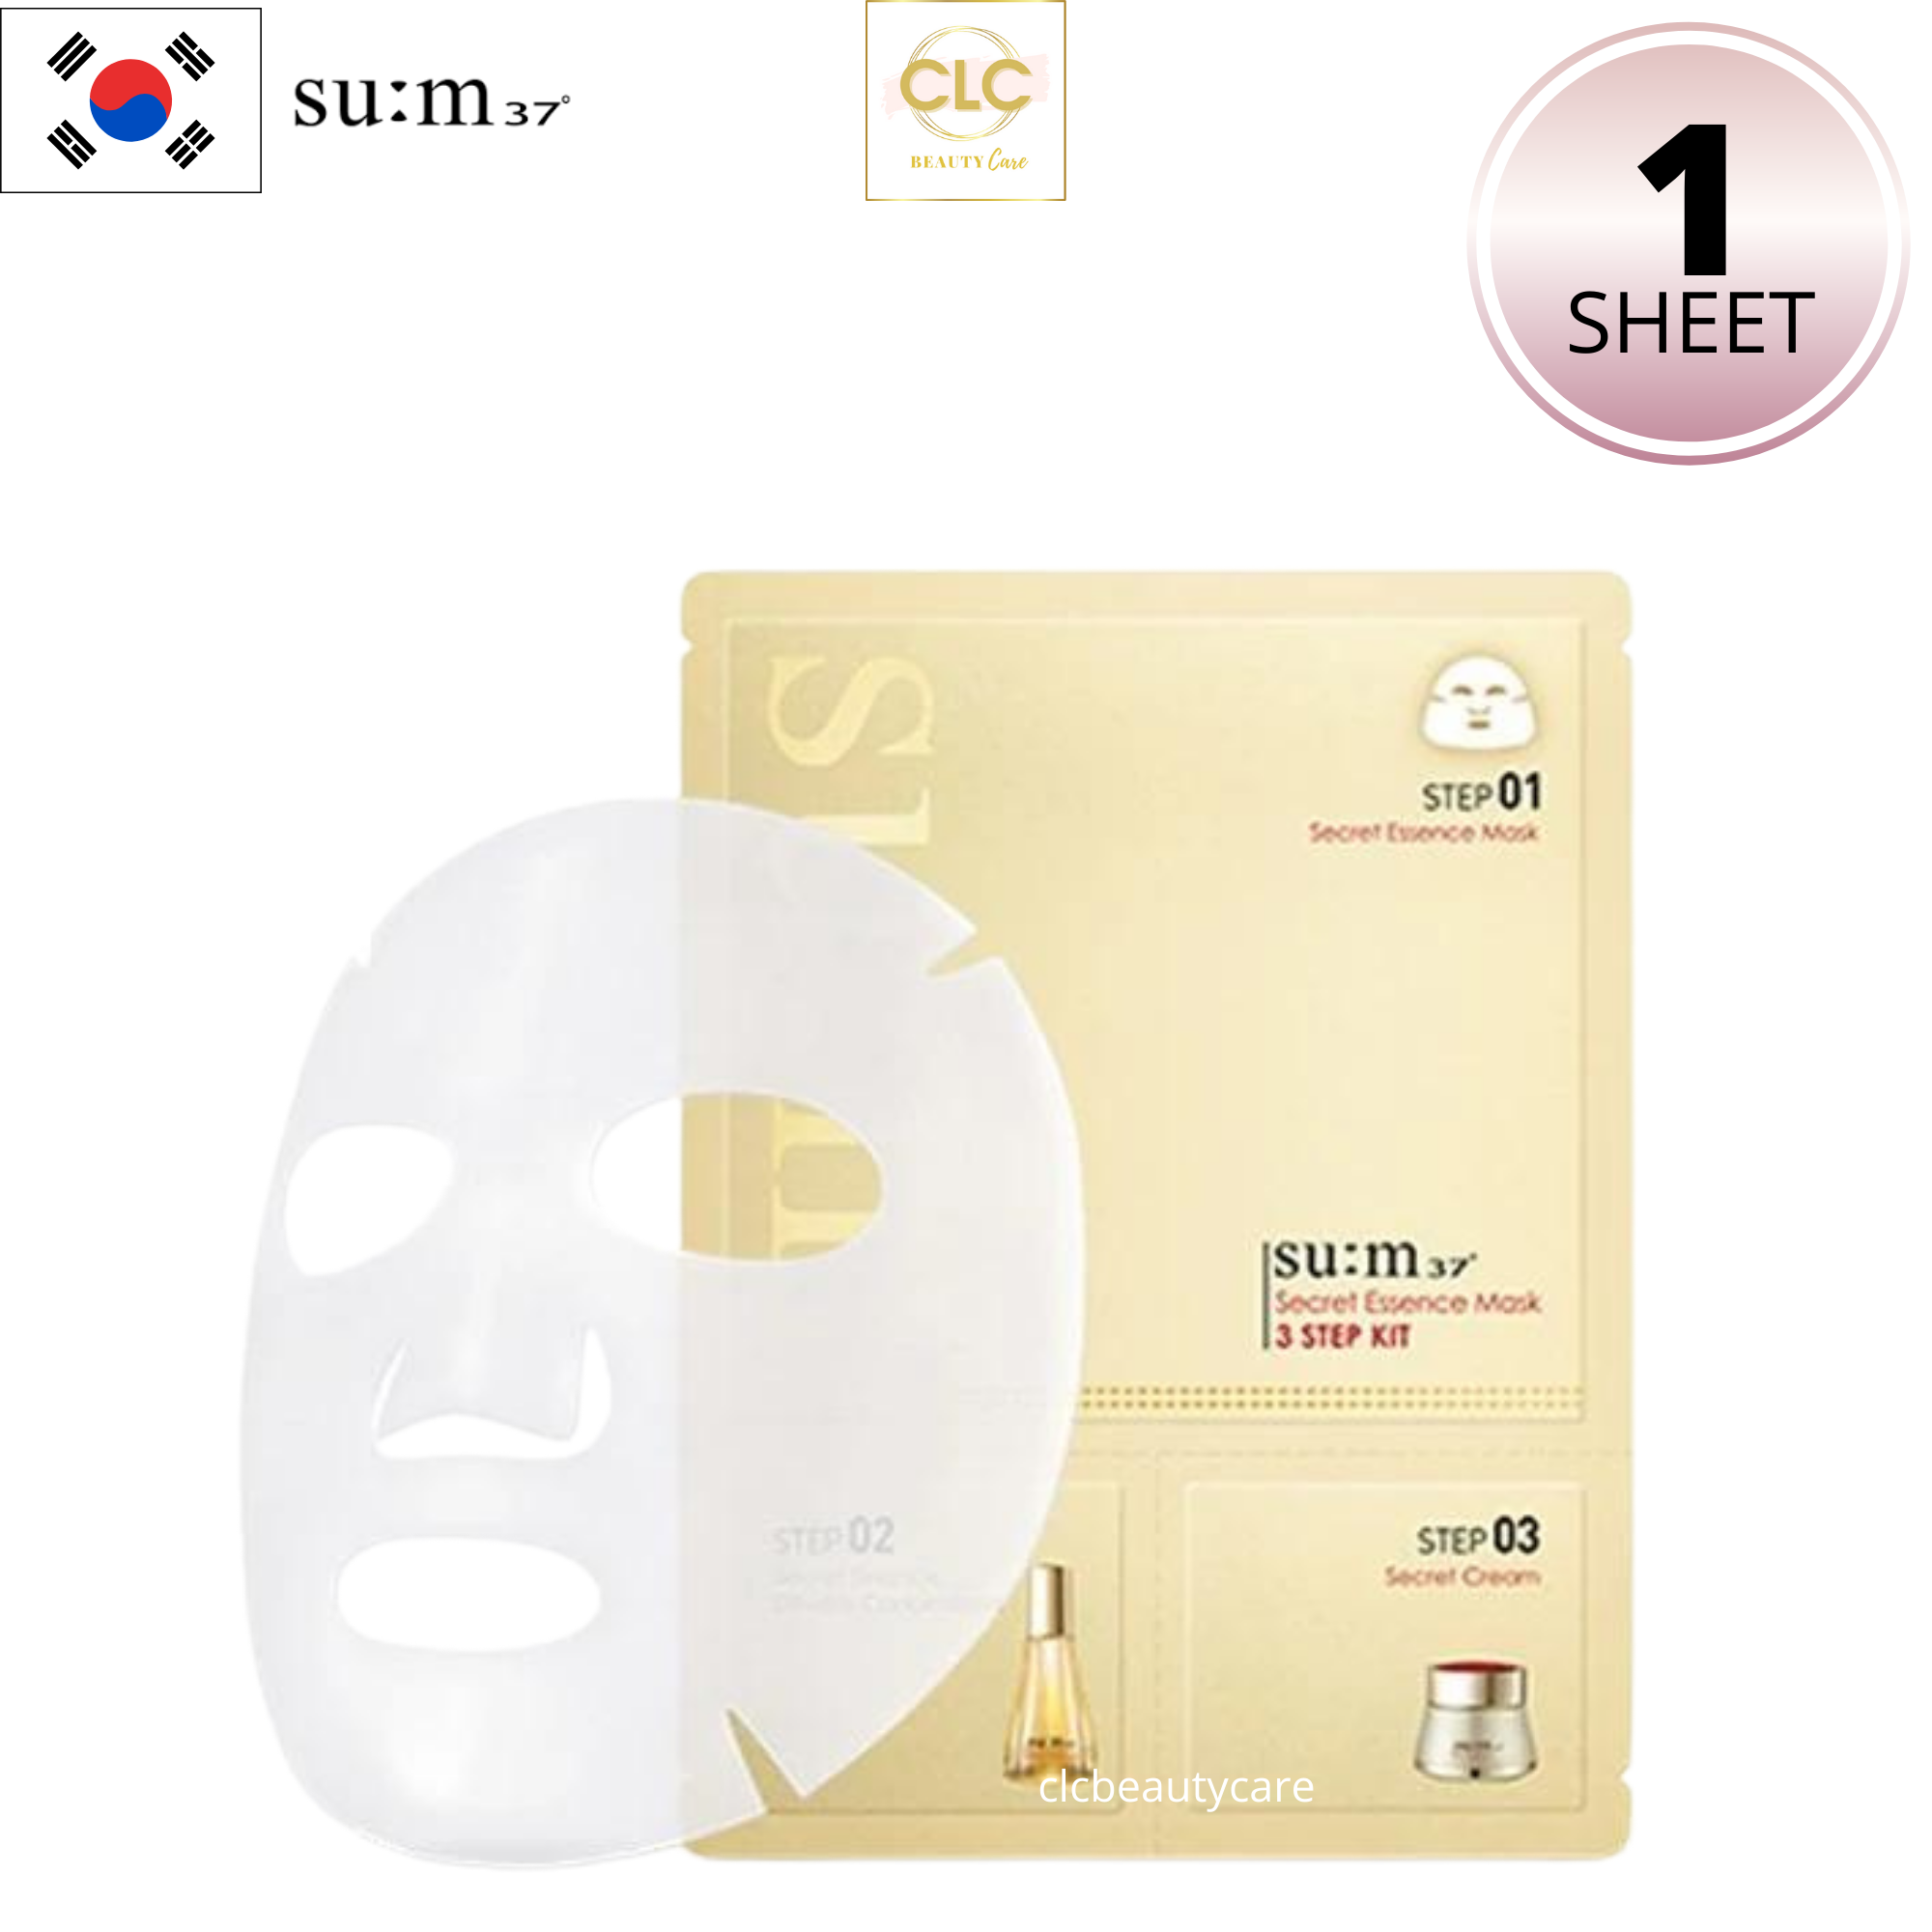 Mặt Nạ Dưỡng Ẩm Nước Thần SUM:37 Secret Essence 3-Step - 1 Mask